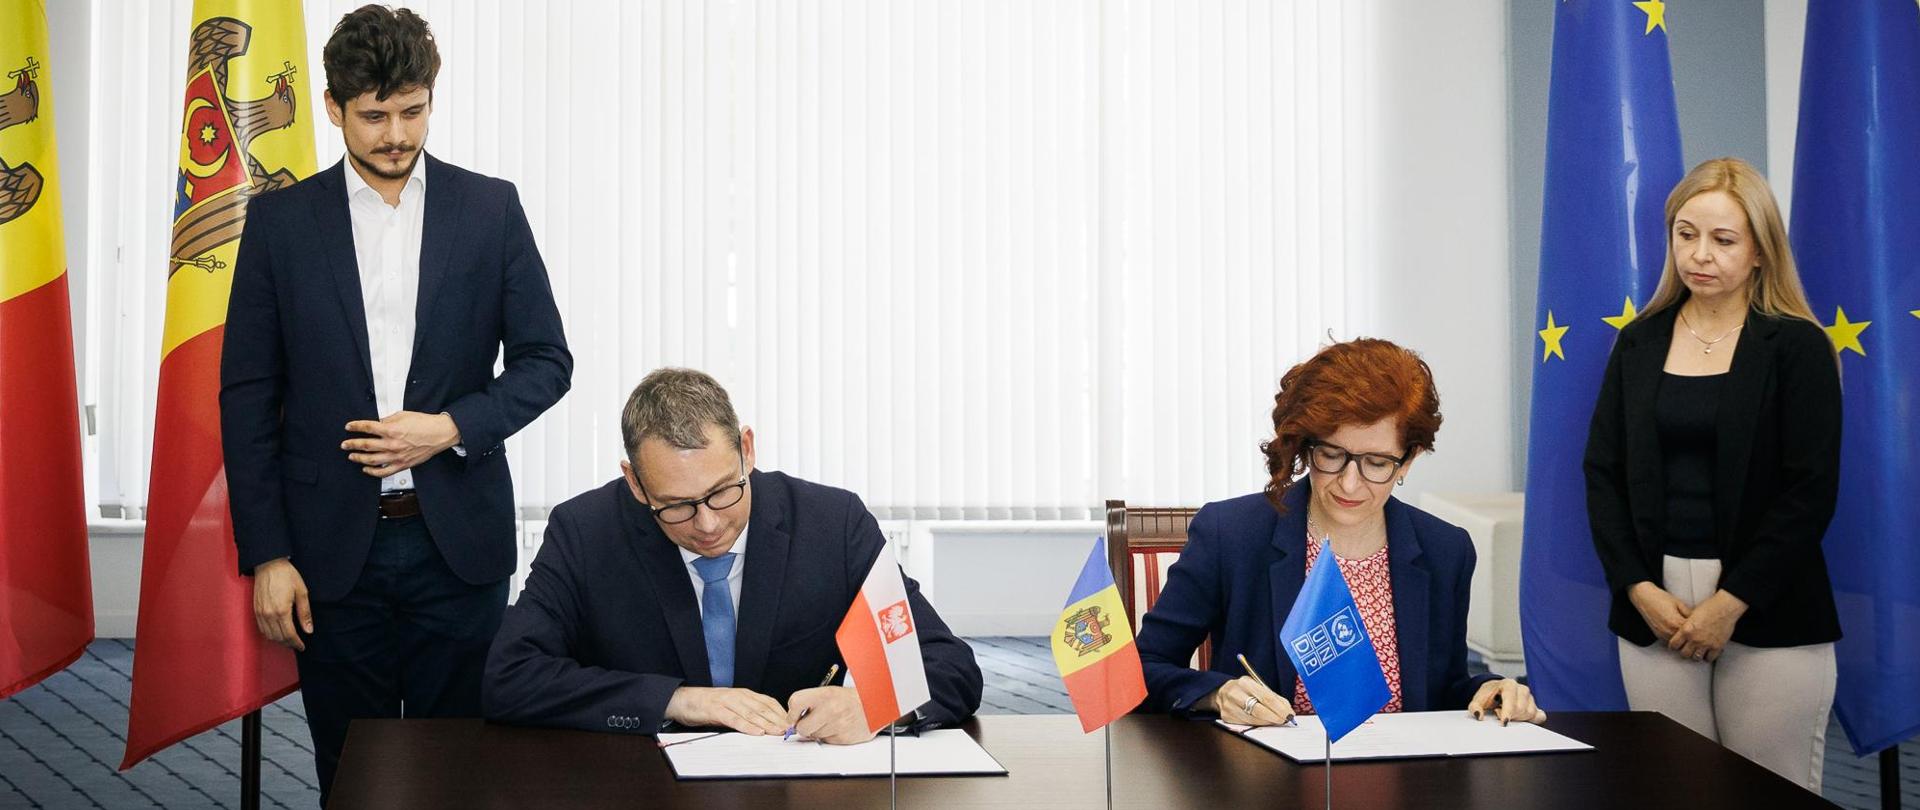 Kobieta i mężczyzna w oficjalnych strojach podpisujące dokumenty przy flagach Polski, Mołdawii, Unii Europejskiej i UNDP.